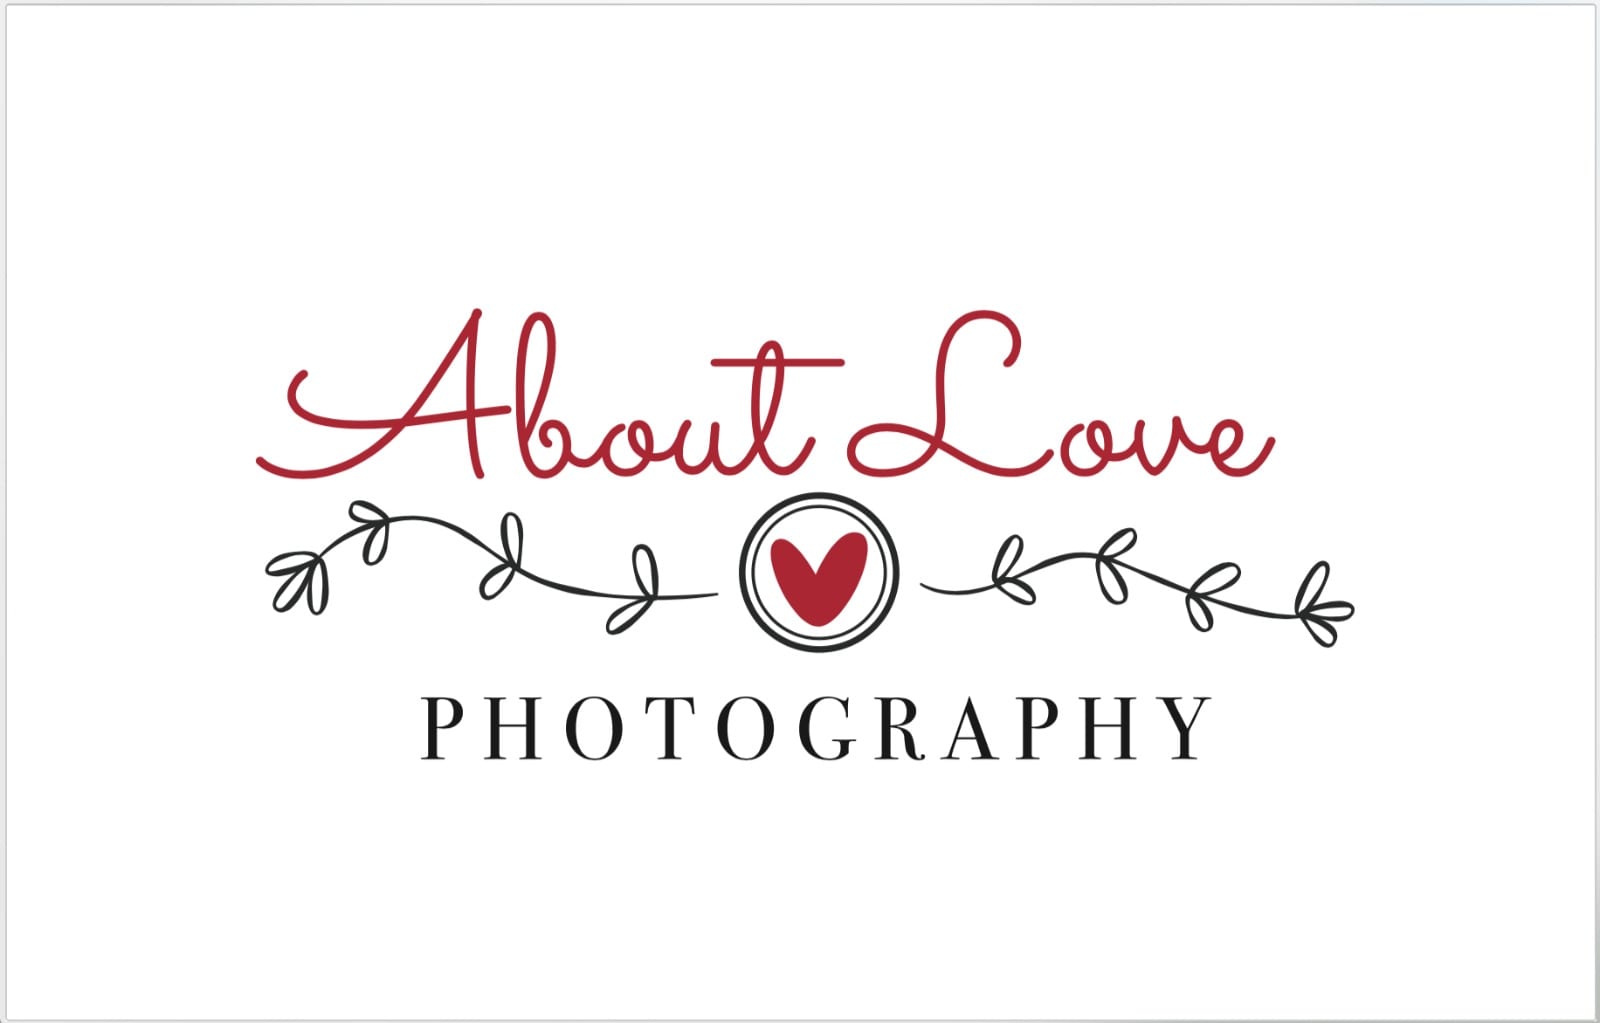  Nasce Aboutlove Photography grazie alla collaborazione con Orto Creativo!